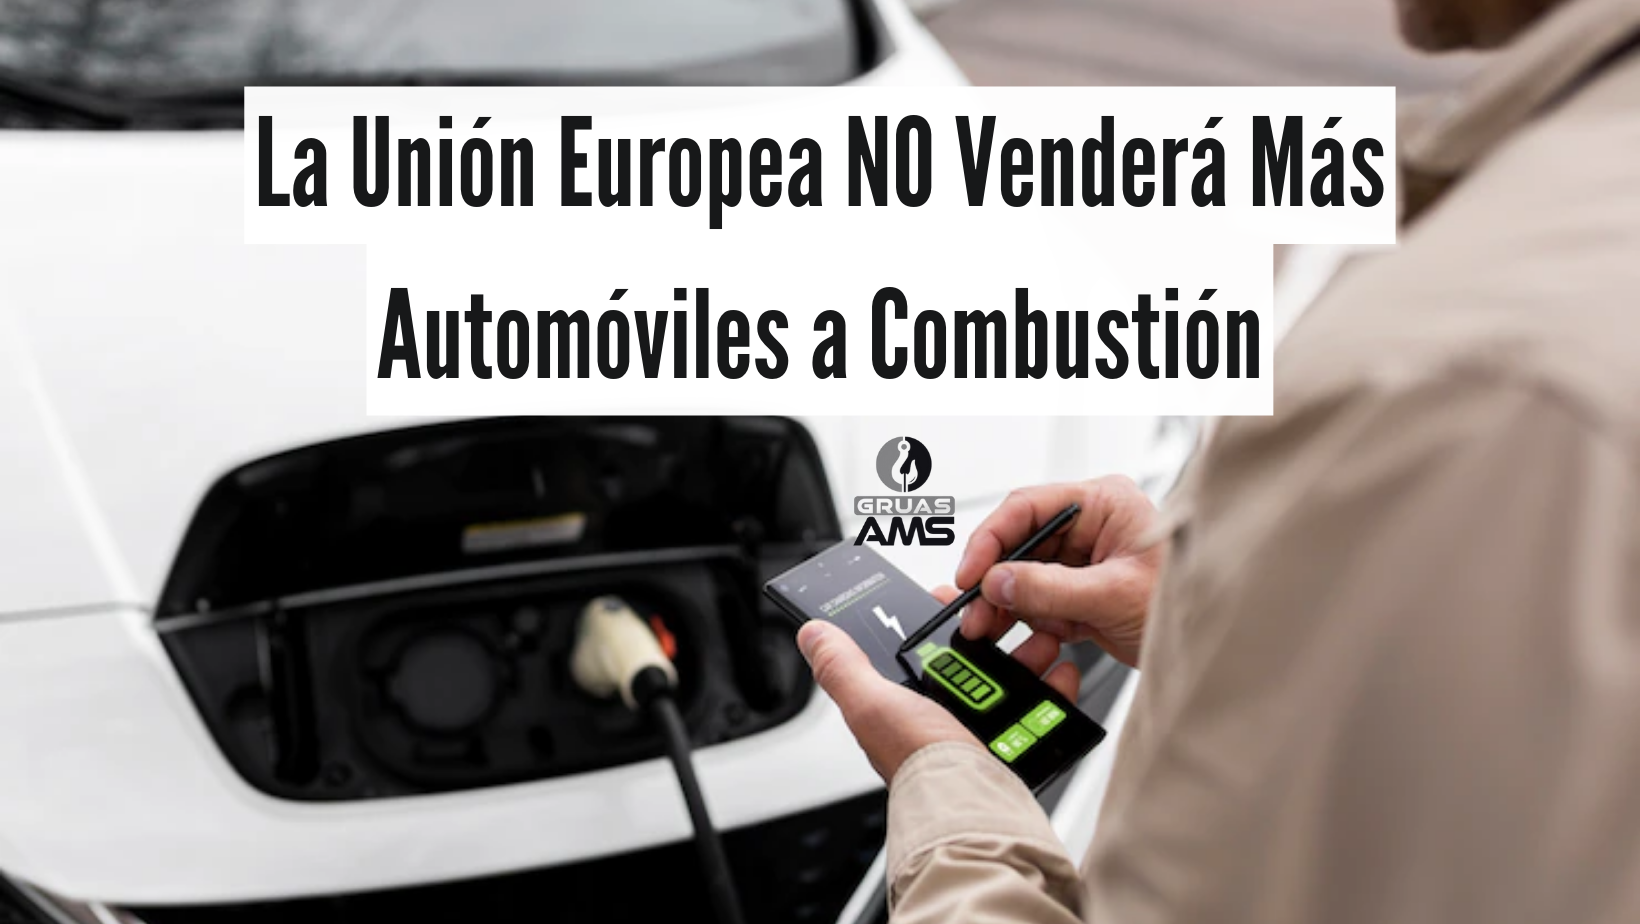 La Unión Europea NO Venderá Más Automóviles a Combustión